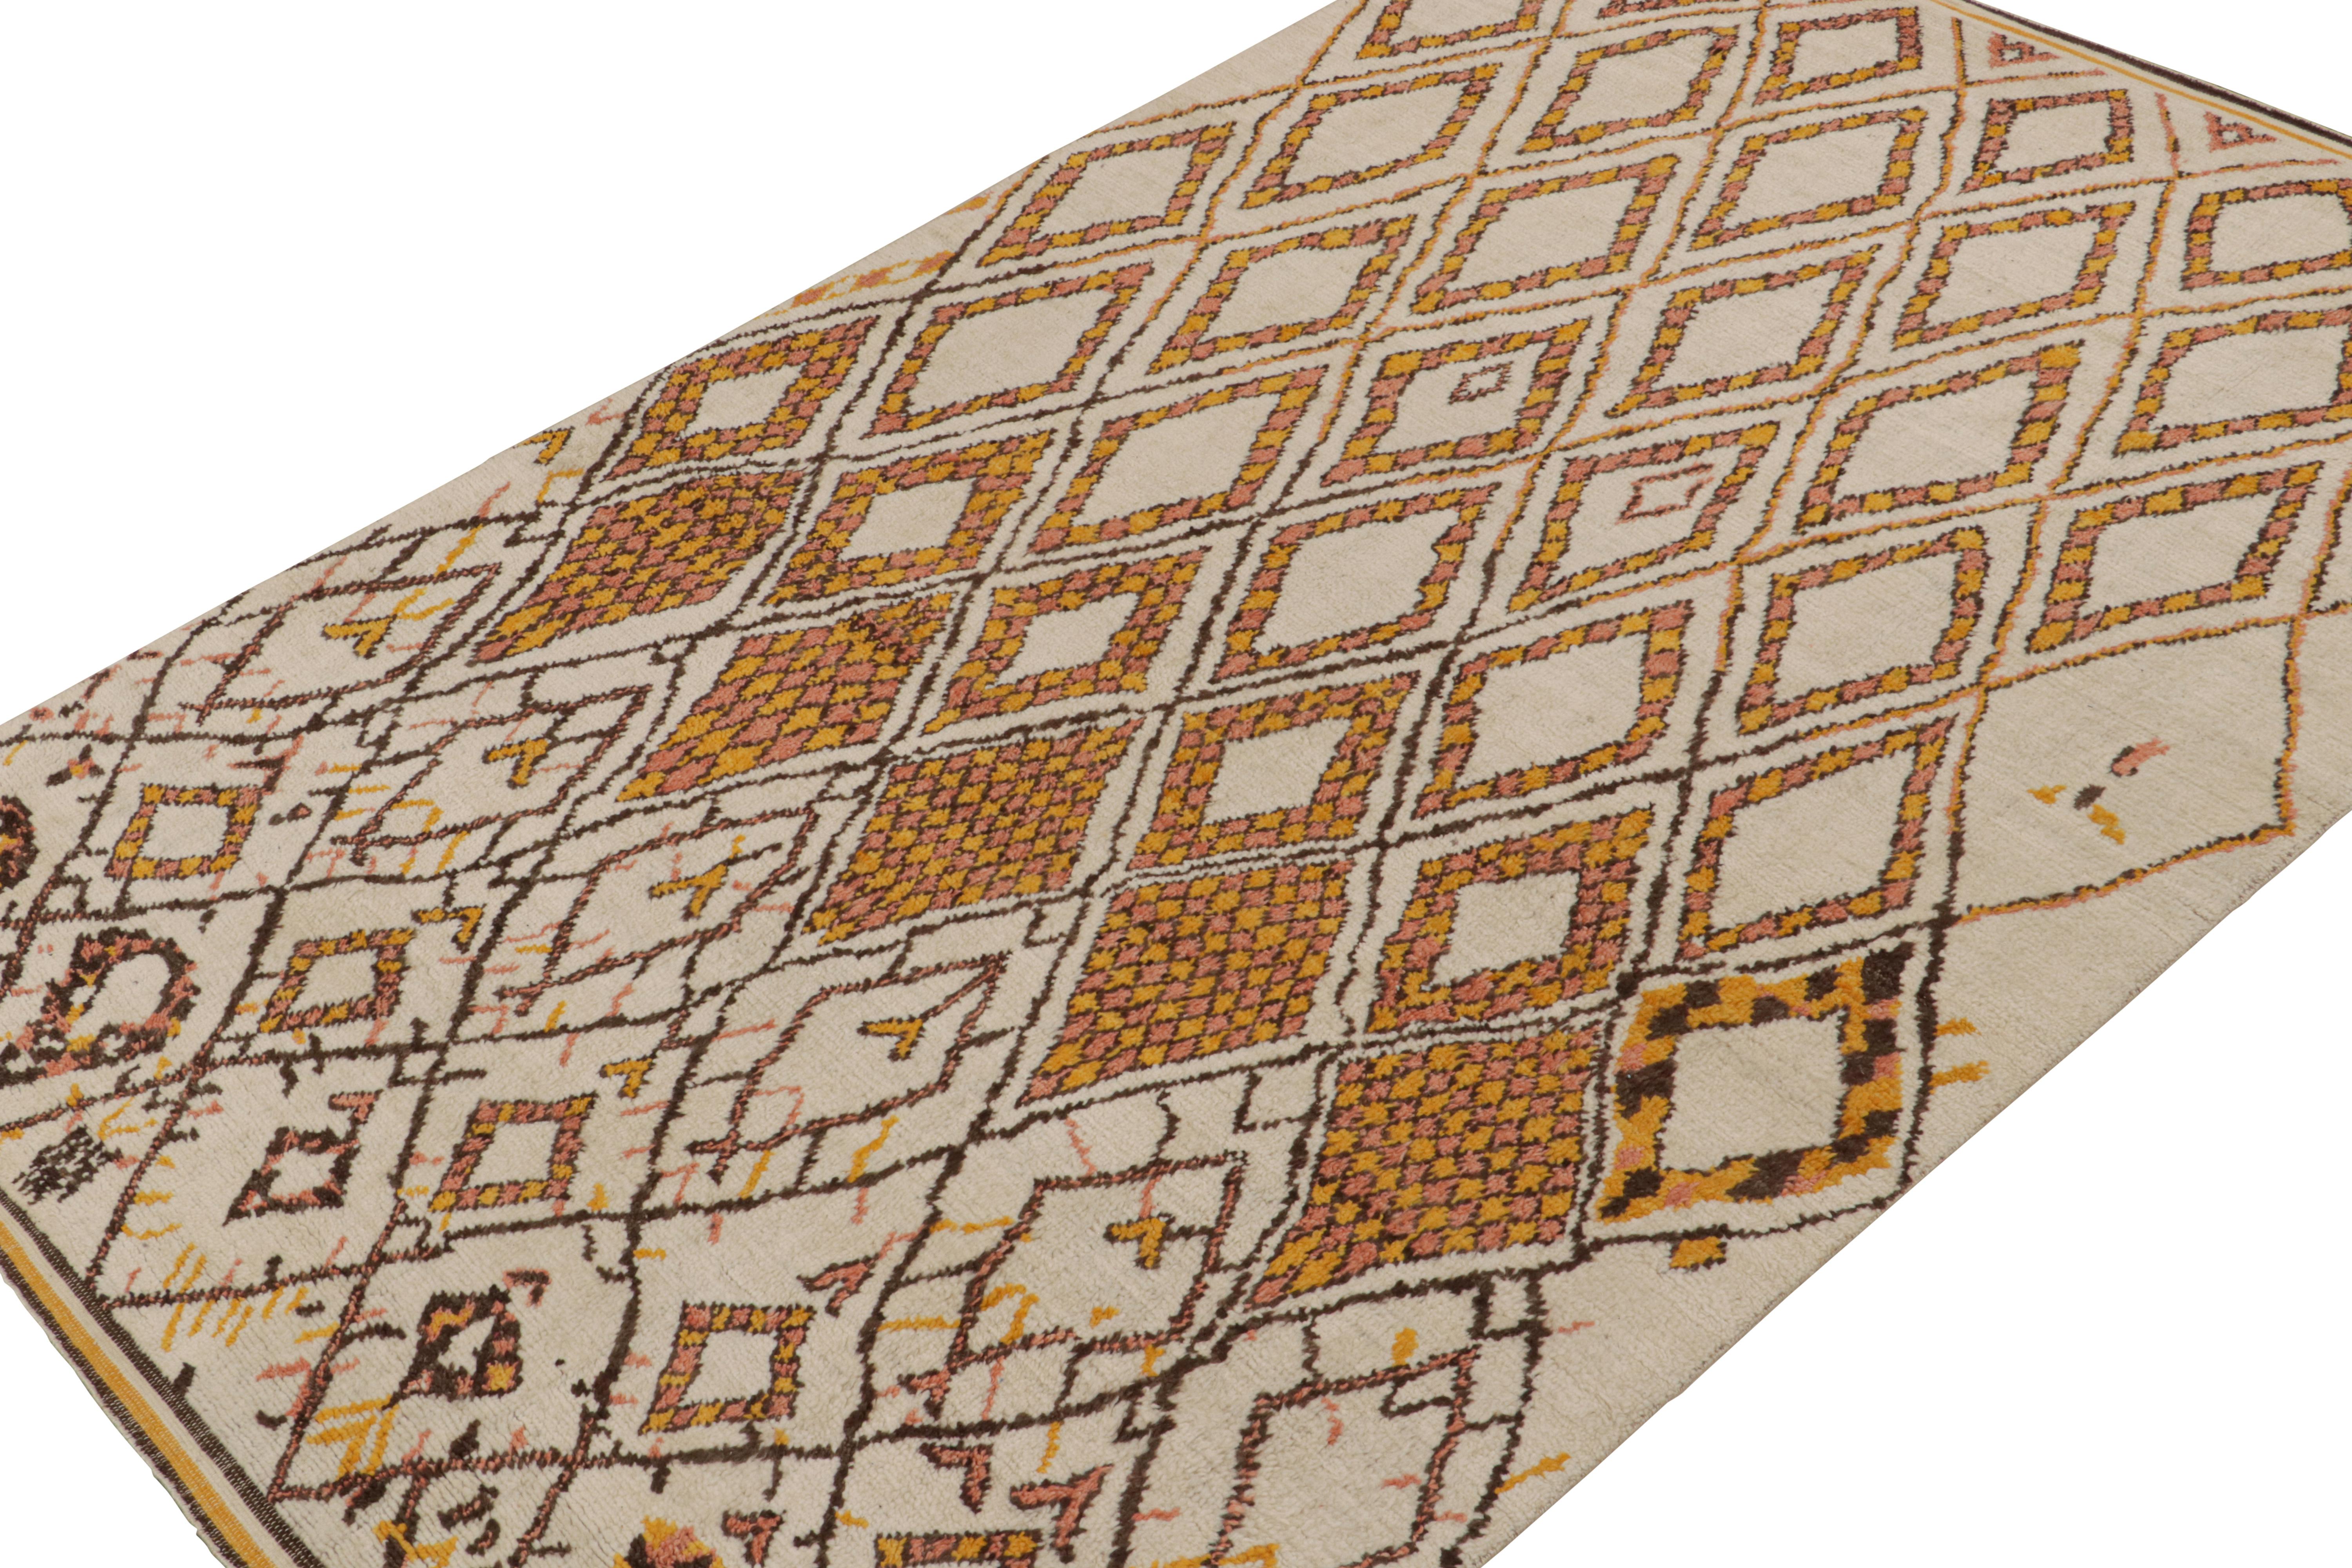 Noué à la main en laine, ce tapis 8x12 est un nouvel ajout à la Collectional de Rug & Kilim. 

Sur le Design/One

Ce tapis présente un style primitiviste avec des motifs brun-or sur un fond crème. Les connaisseurs admireront cette interprétation